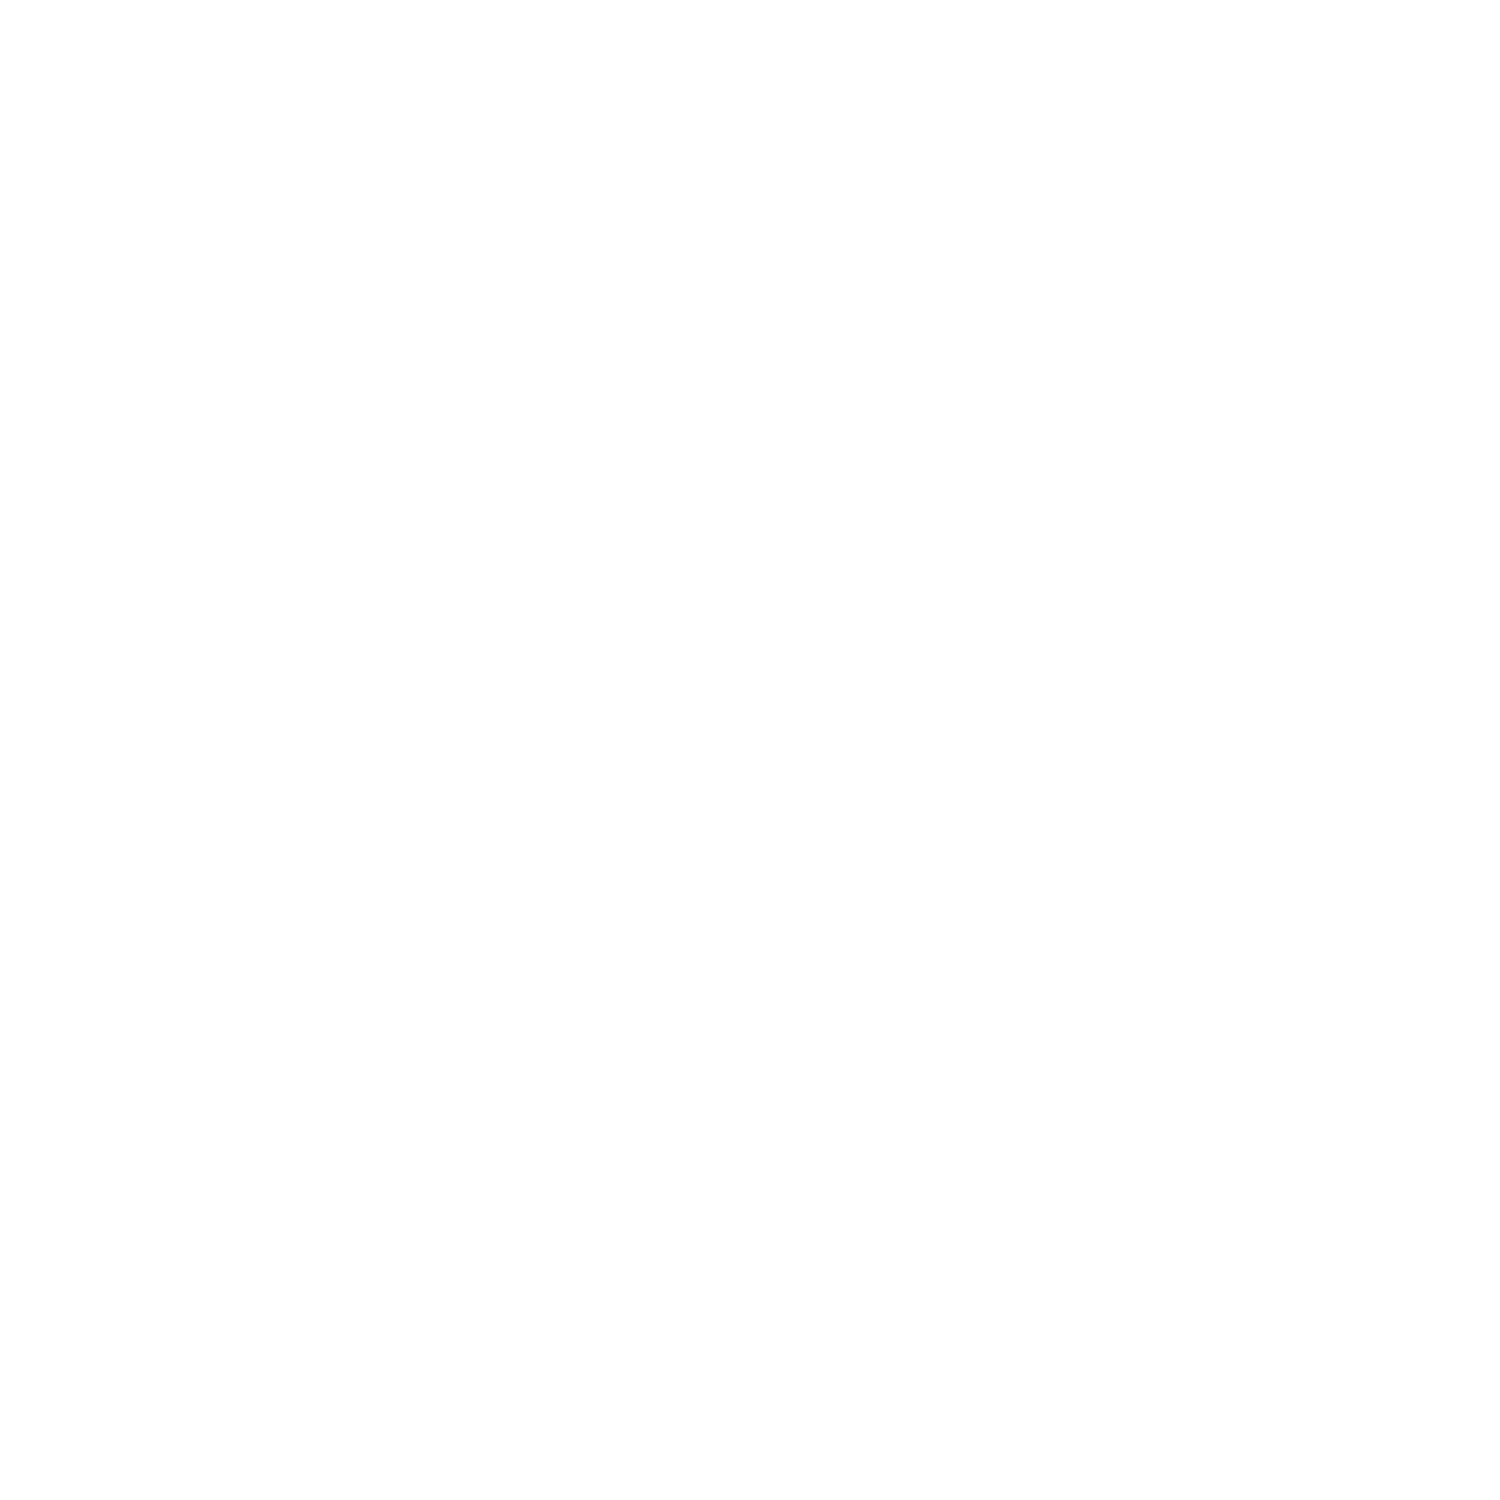 Chicago Area Regional Representatives (CARR)